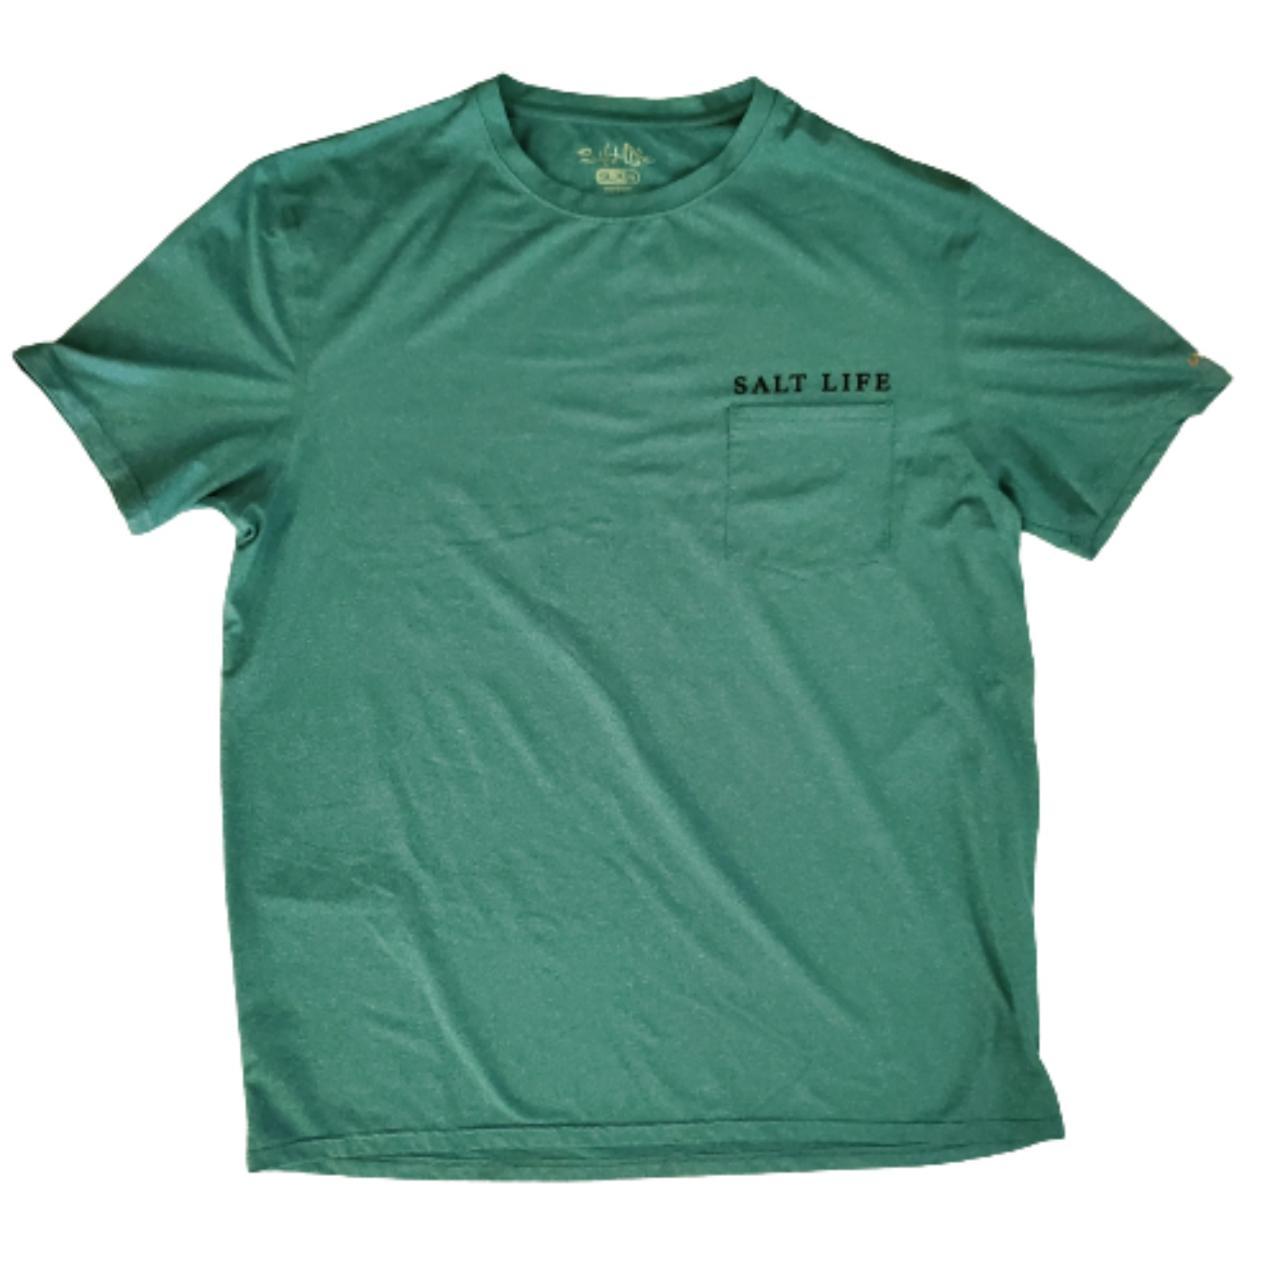 Salt Life Men's T-Shirt - Green - XL